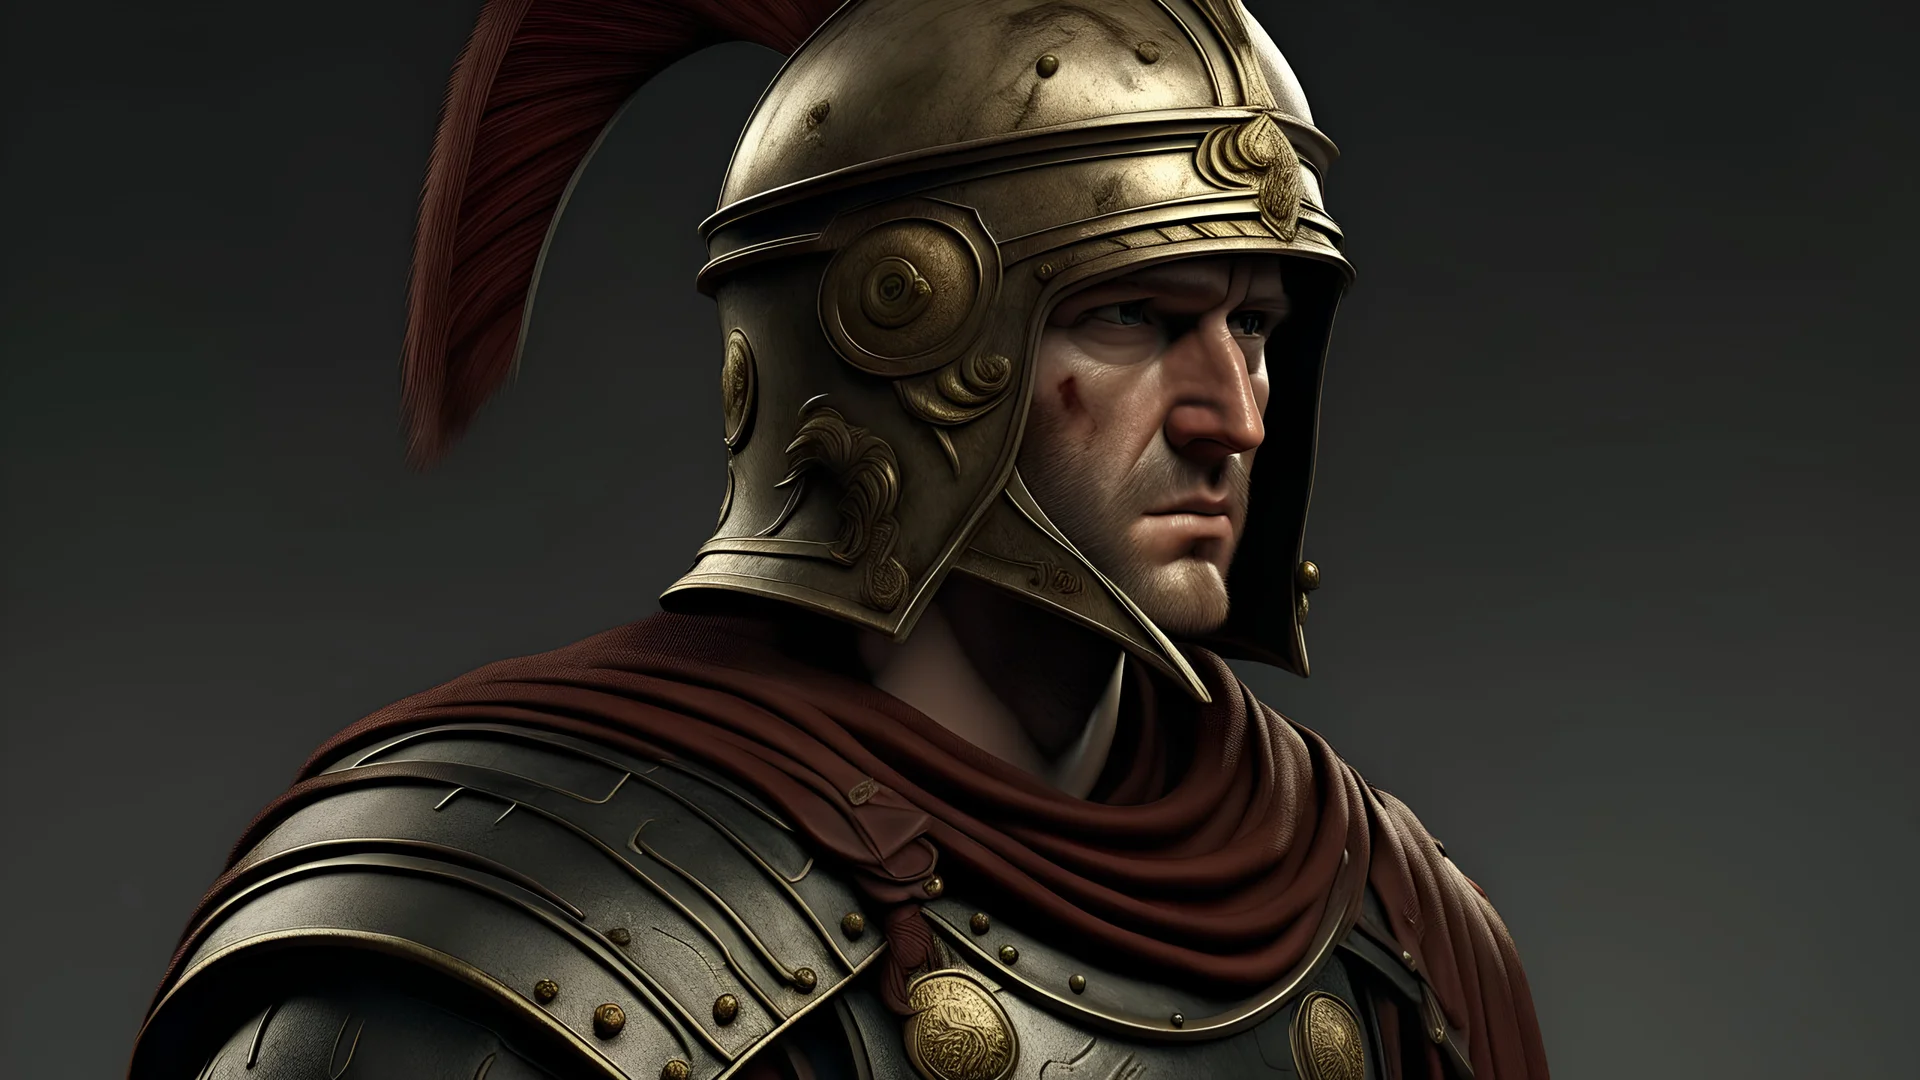 Crie imagens apanhando de um soldado romano